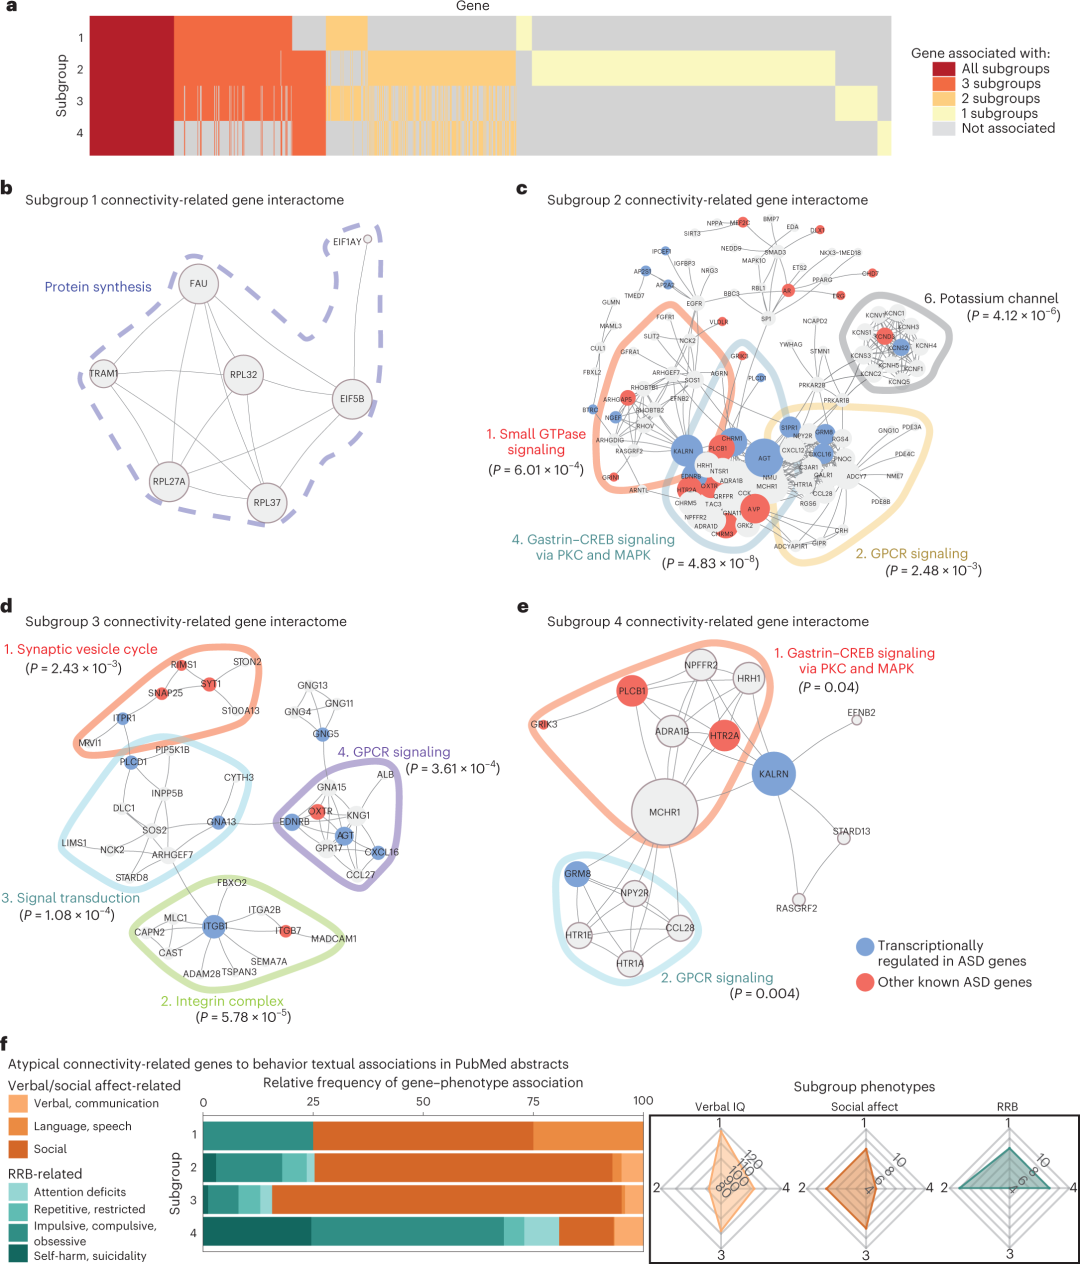 蛋白质-蛋白质相互作用网络揭示了不同的连通性相关基因，这些基因与ASD相关行为具有关联